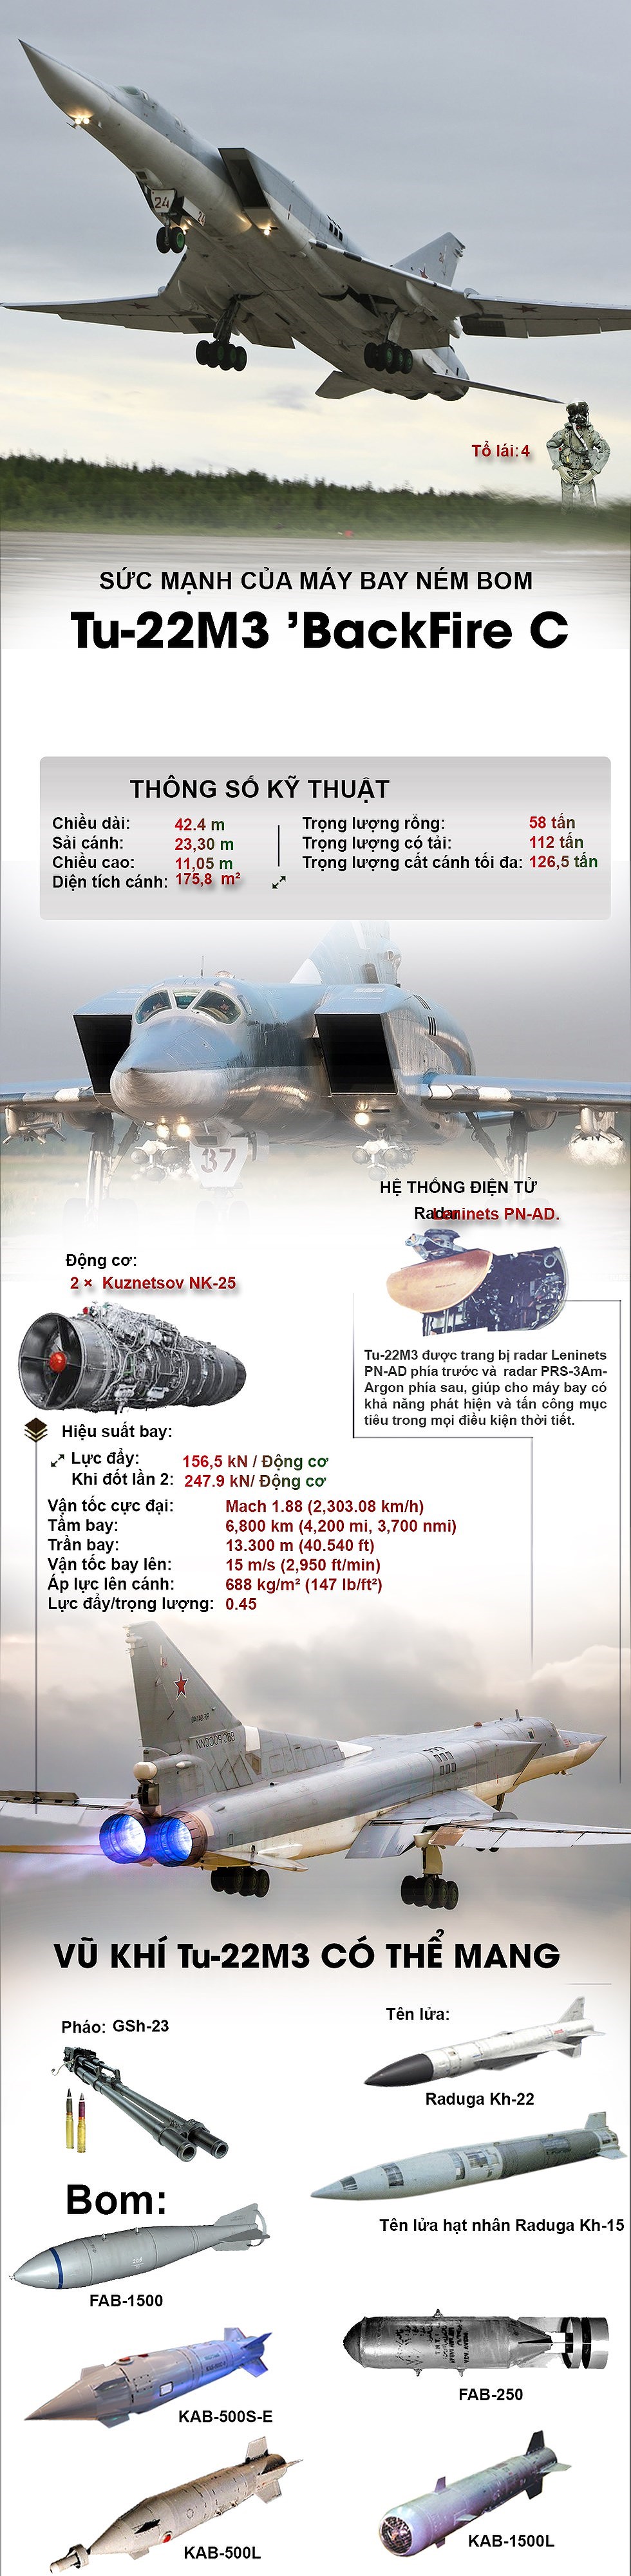 [Infographic] Sức mạnh của máy bay ném bom chiến lược Tu-22M3 - Ảnh 1